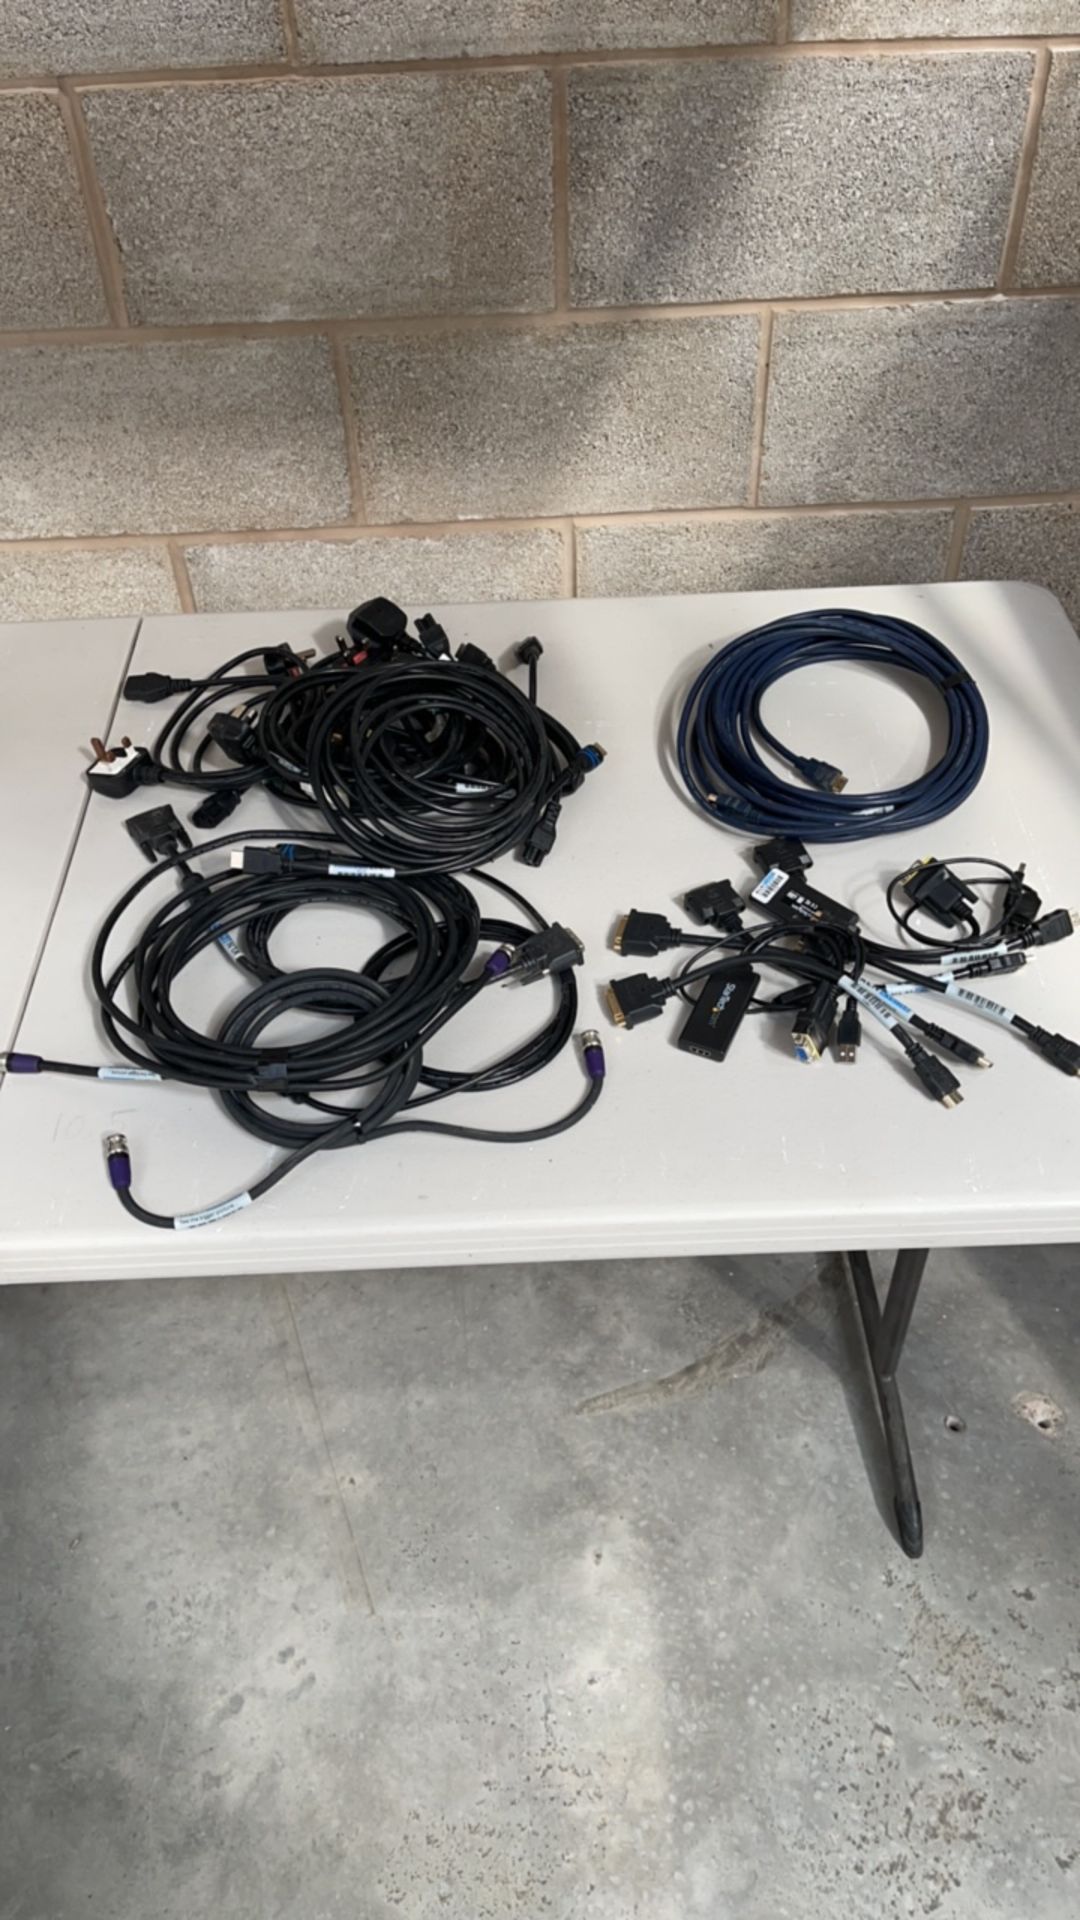 Random assortment of cable, hd sdi, hdmi, DVI, adaptors and mains